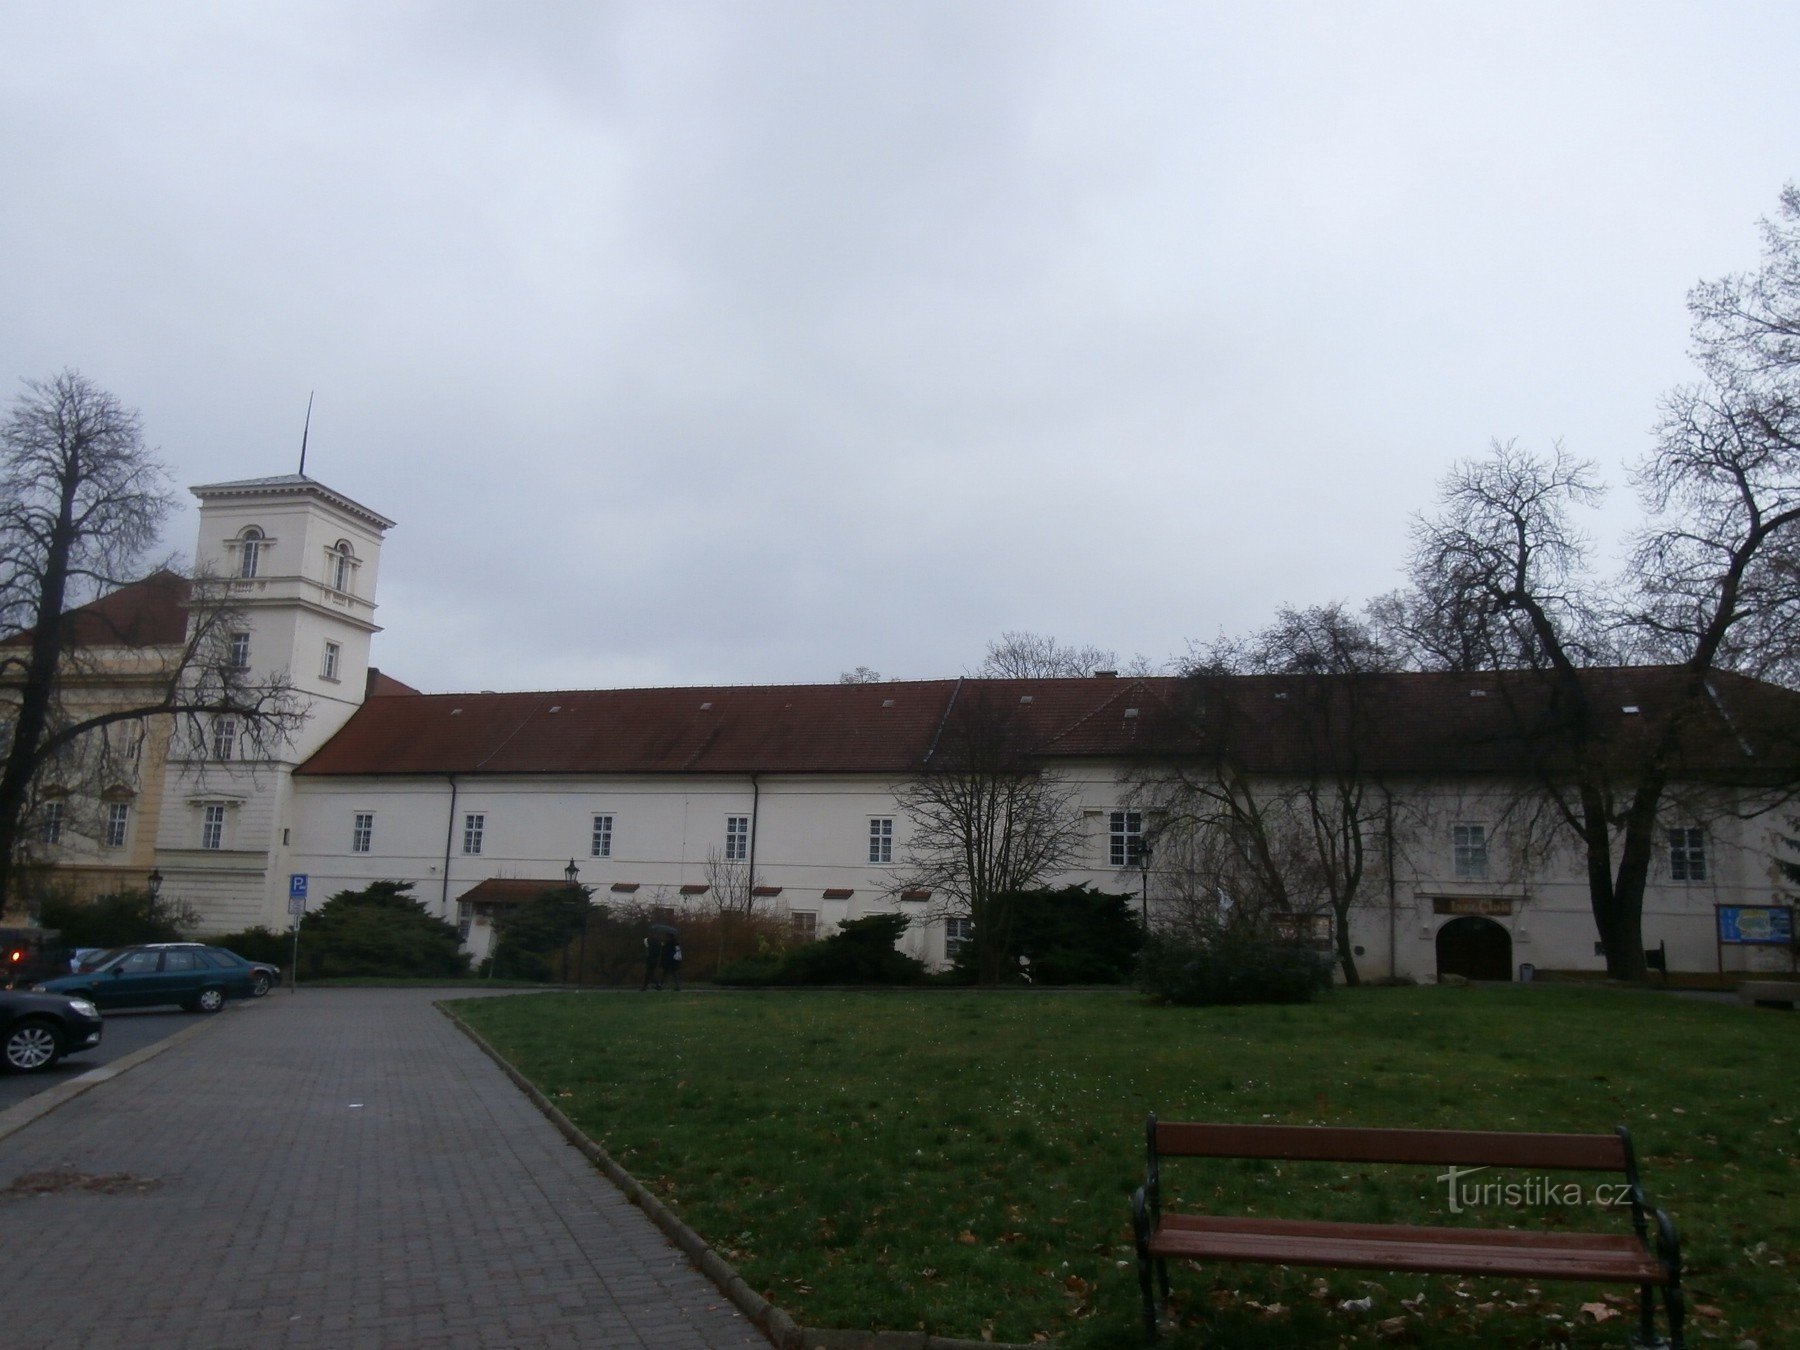 Ujeżdżalnia zamku Teplice, w której odbywa się wystawa